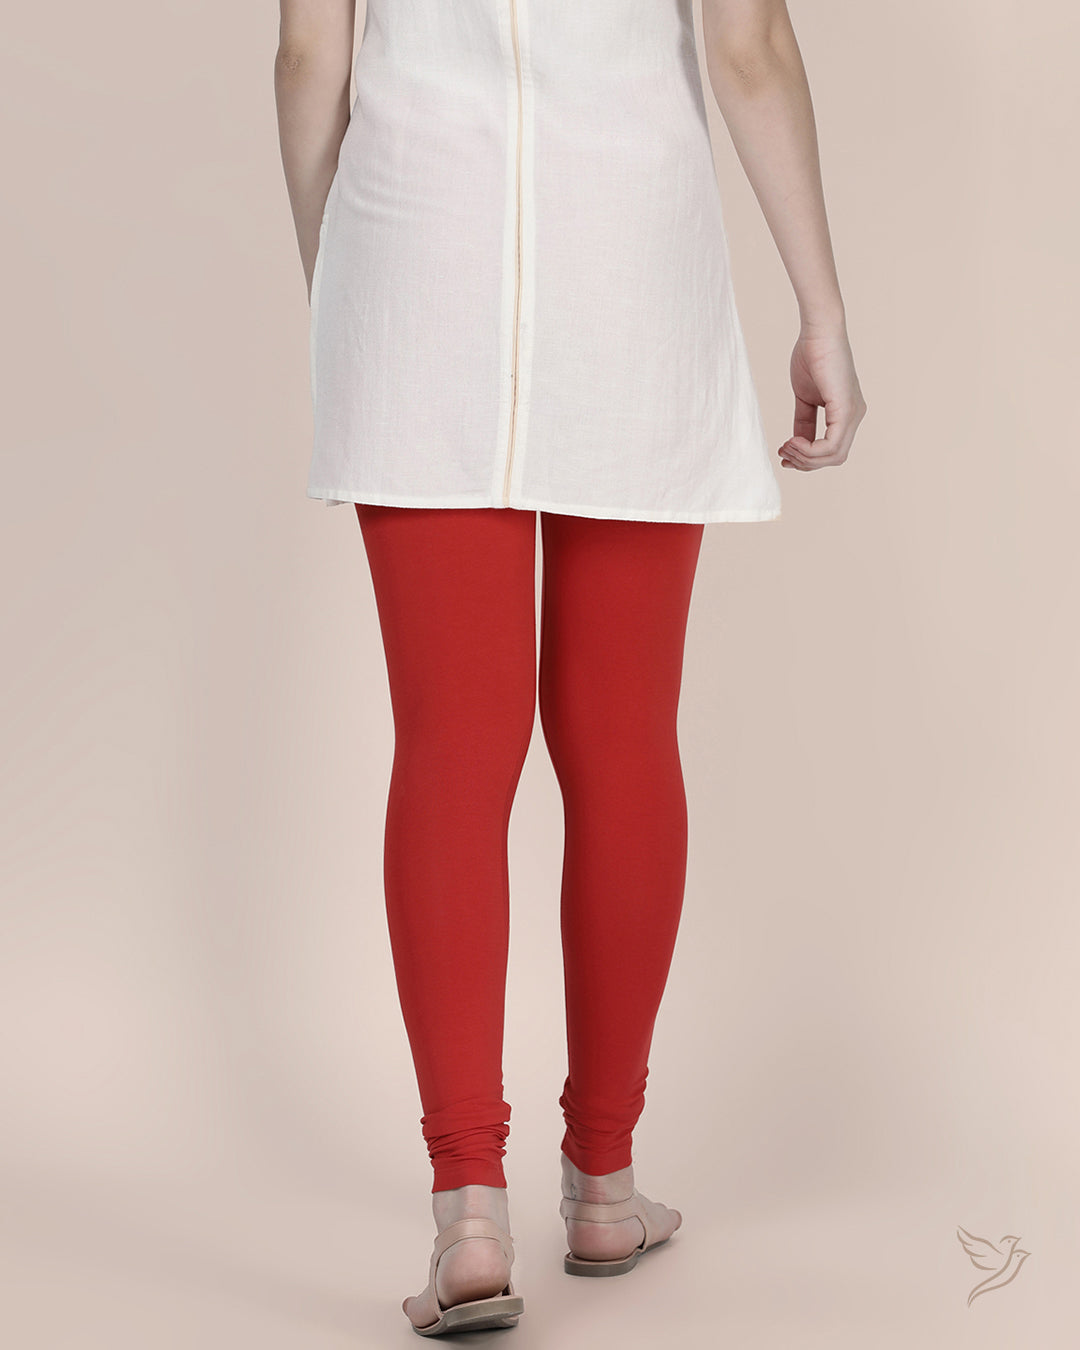 Stylish Red Chilli Cotton Churidar Legging